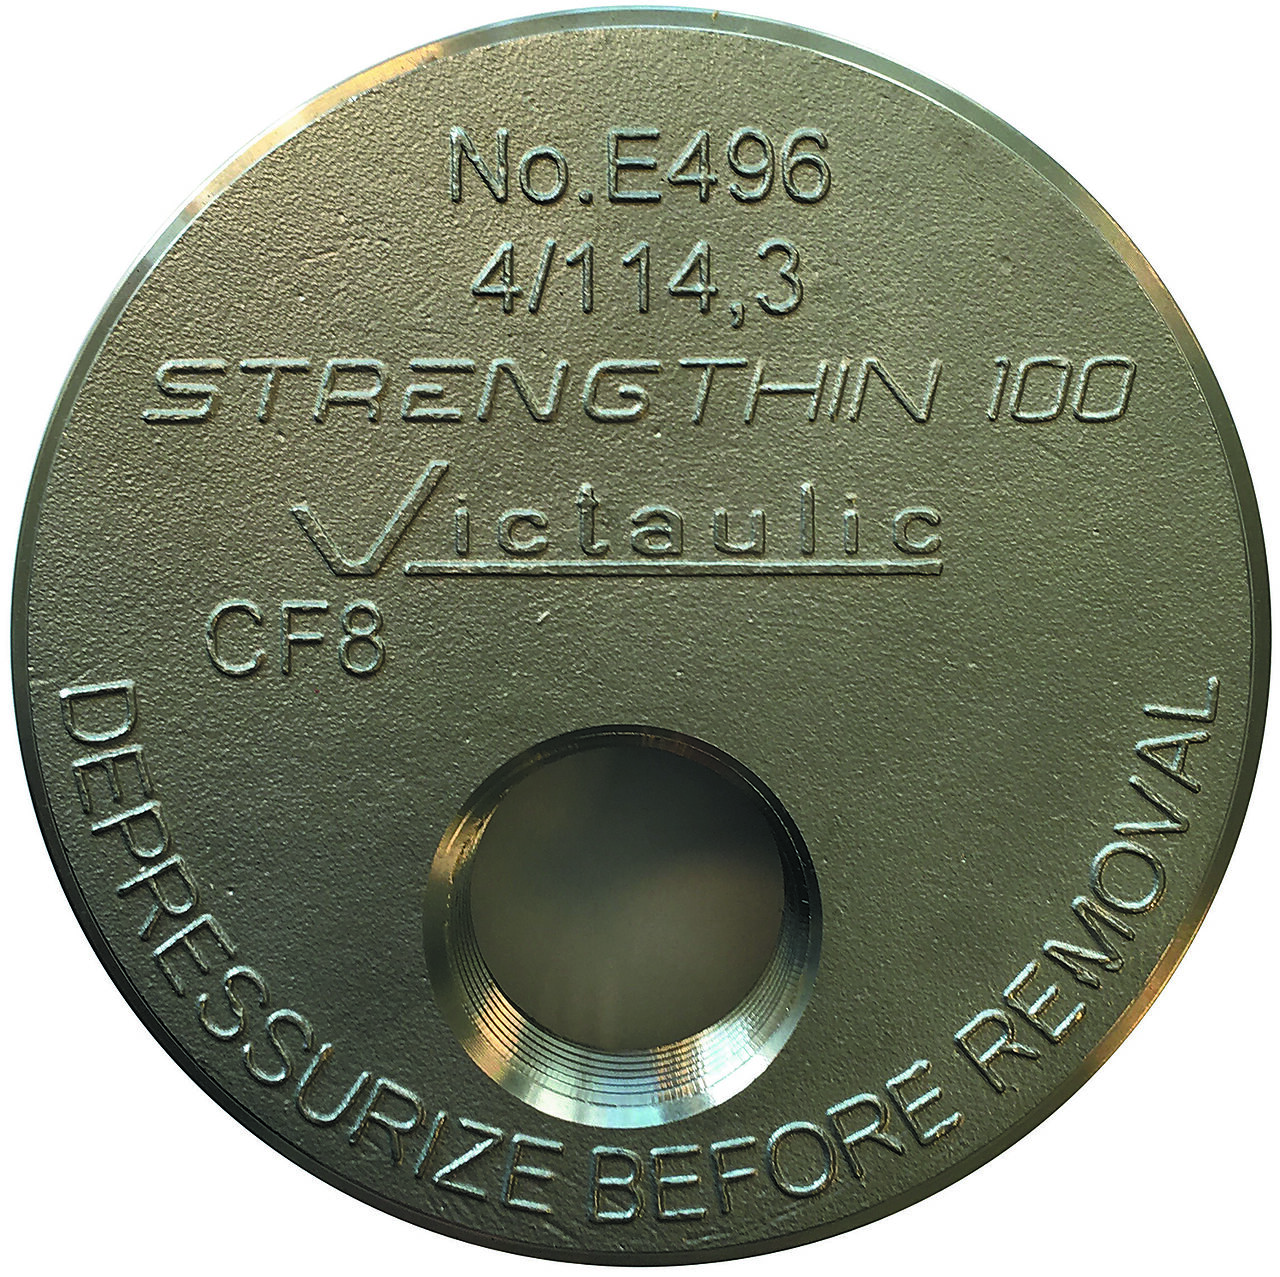 Victaulic Endelokk 88,9 mm x 3/4" E496 StrengThin100 1